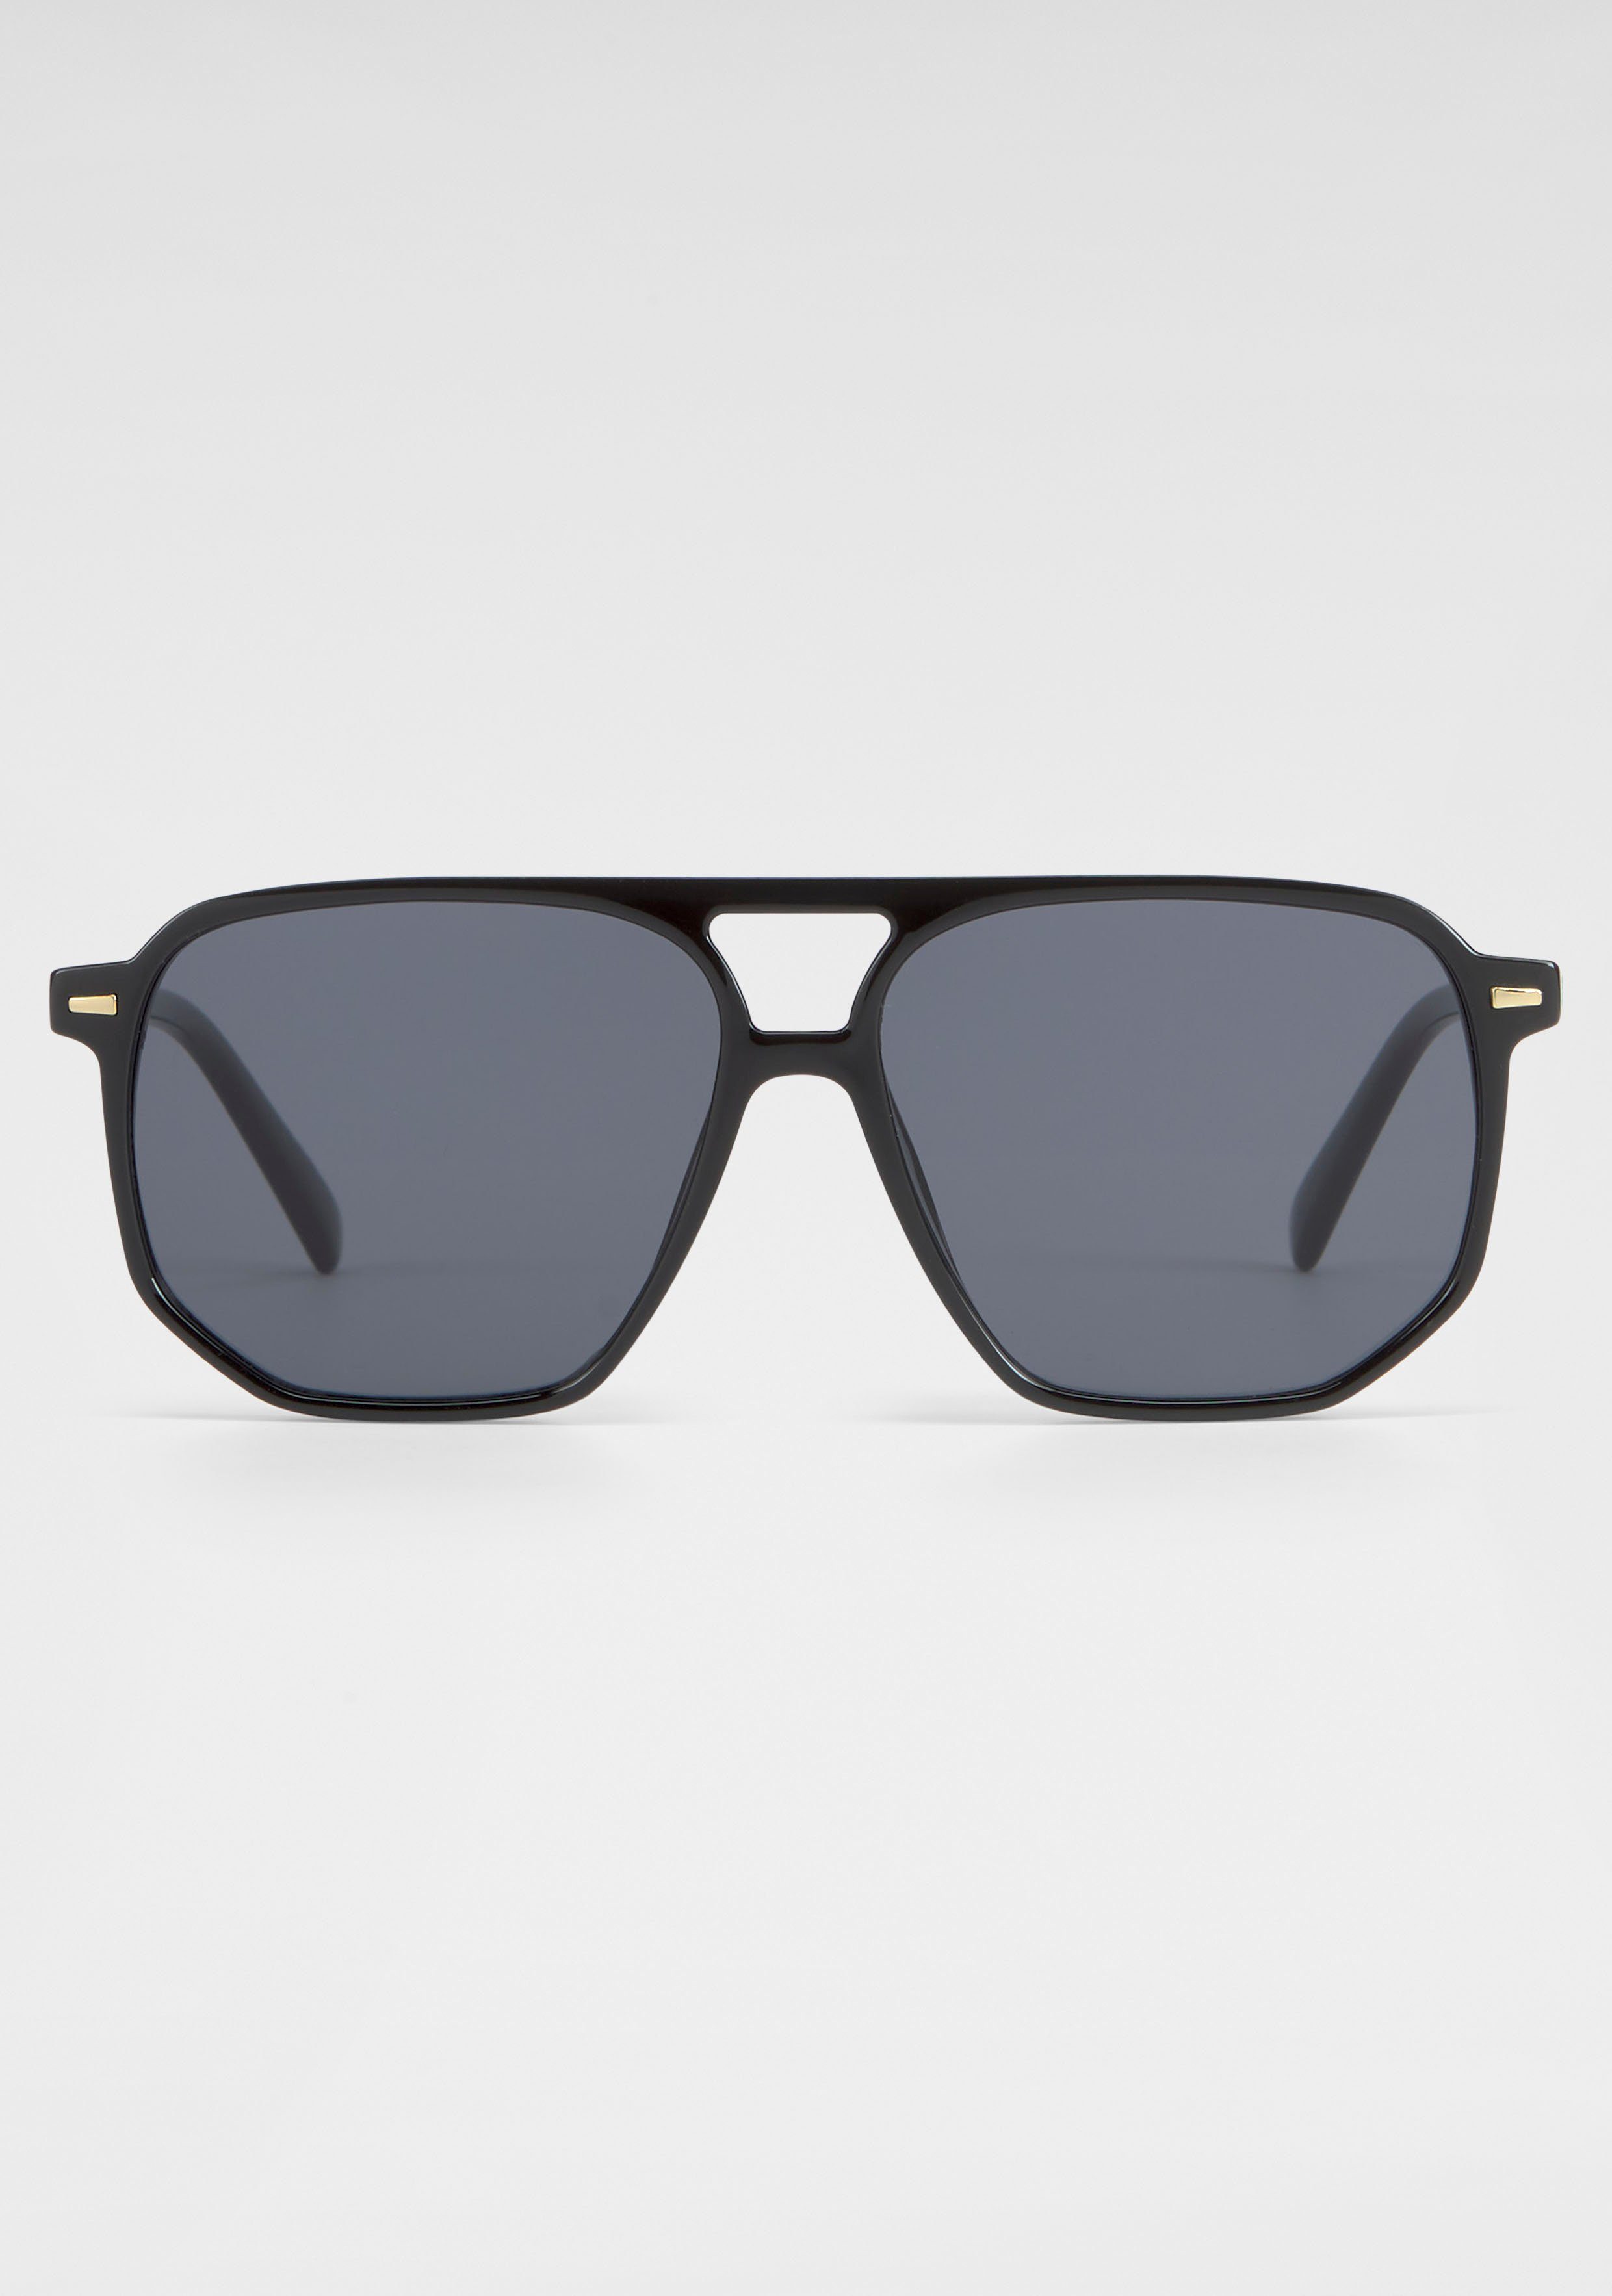 Sonnenbrille schwarz Eyewear SPIRIT YOUNG LONDON Trendige Vollrand-Sonnenbrille